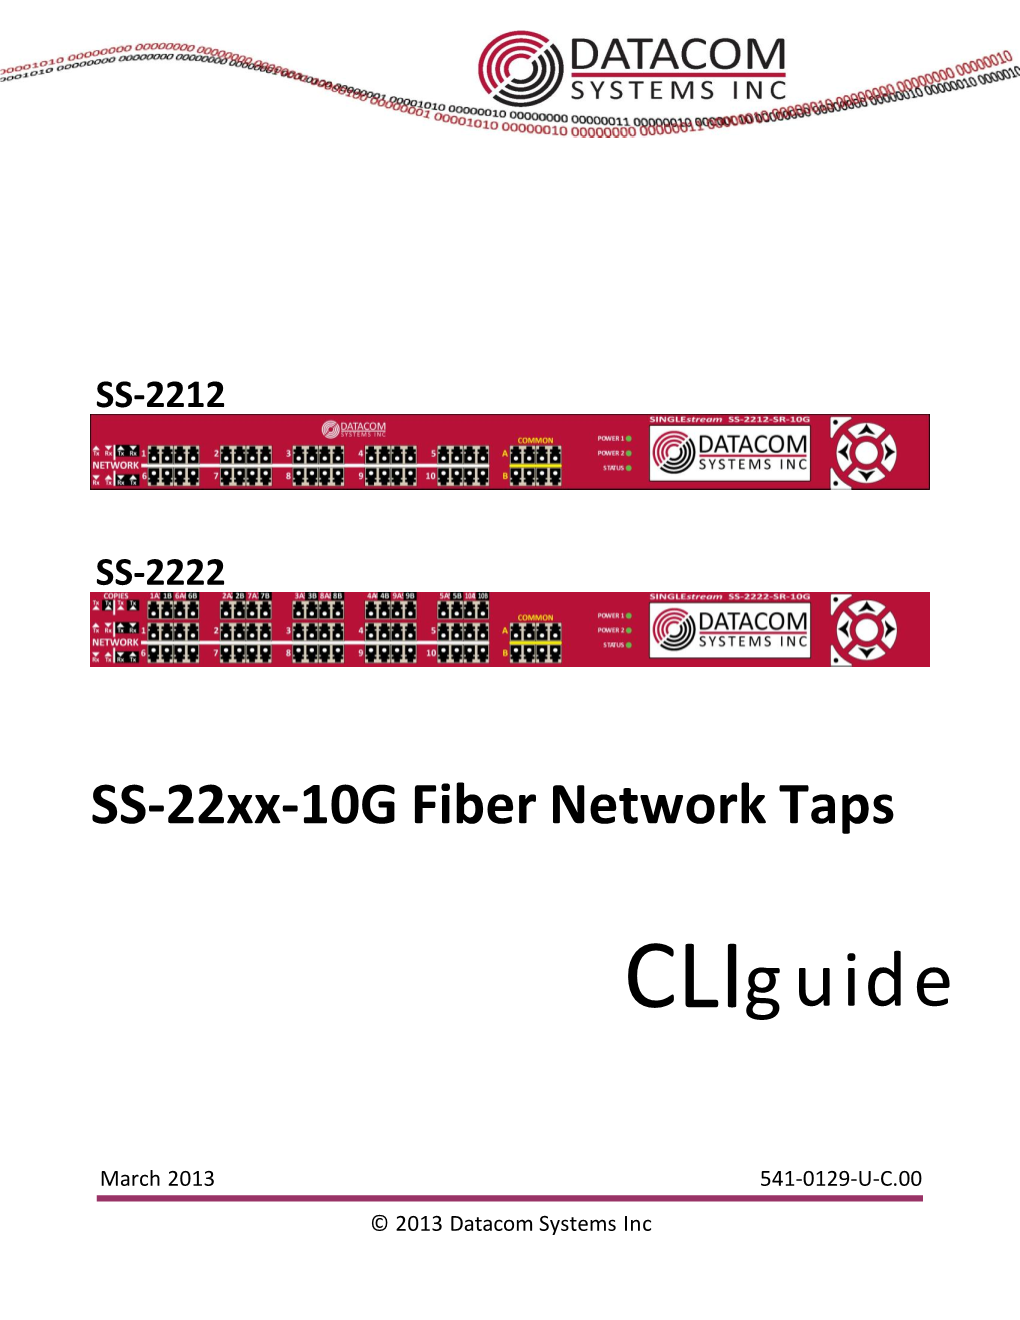 SS-22Xx-10G Fiber Network Taps